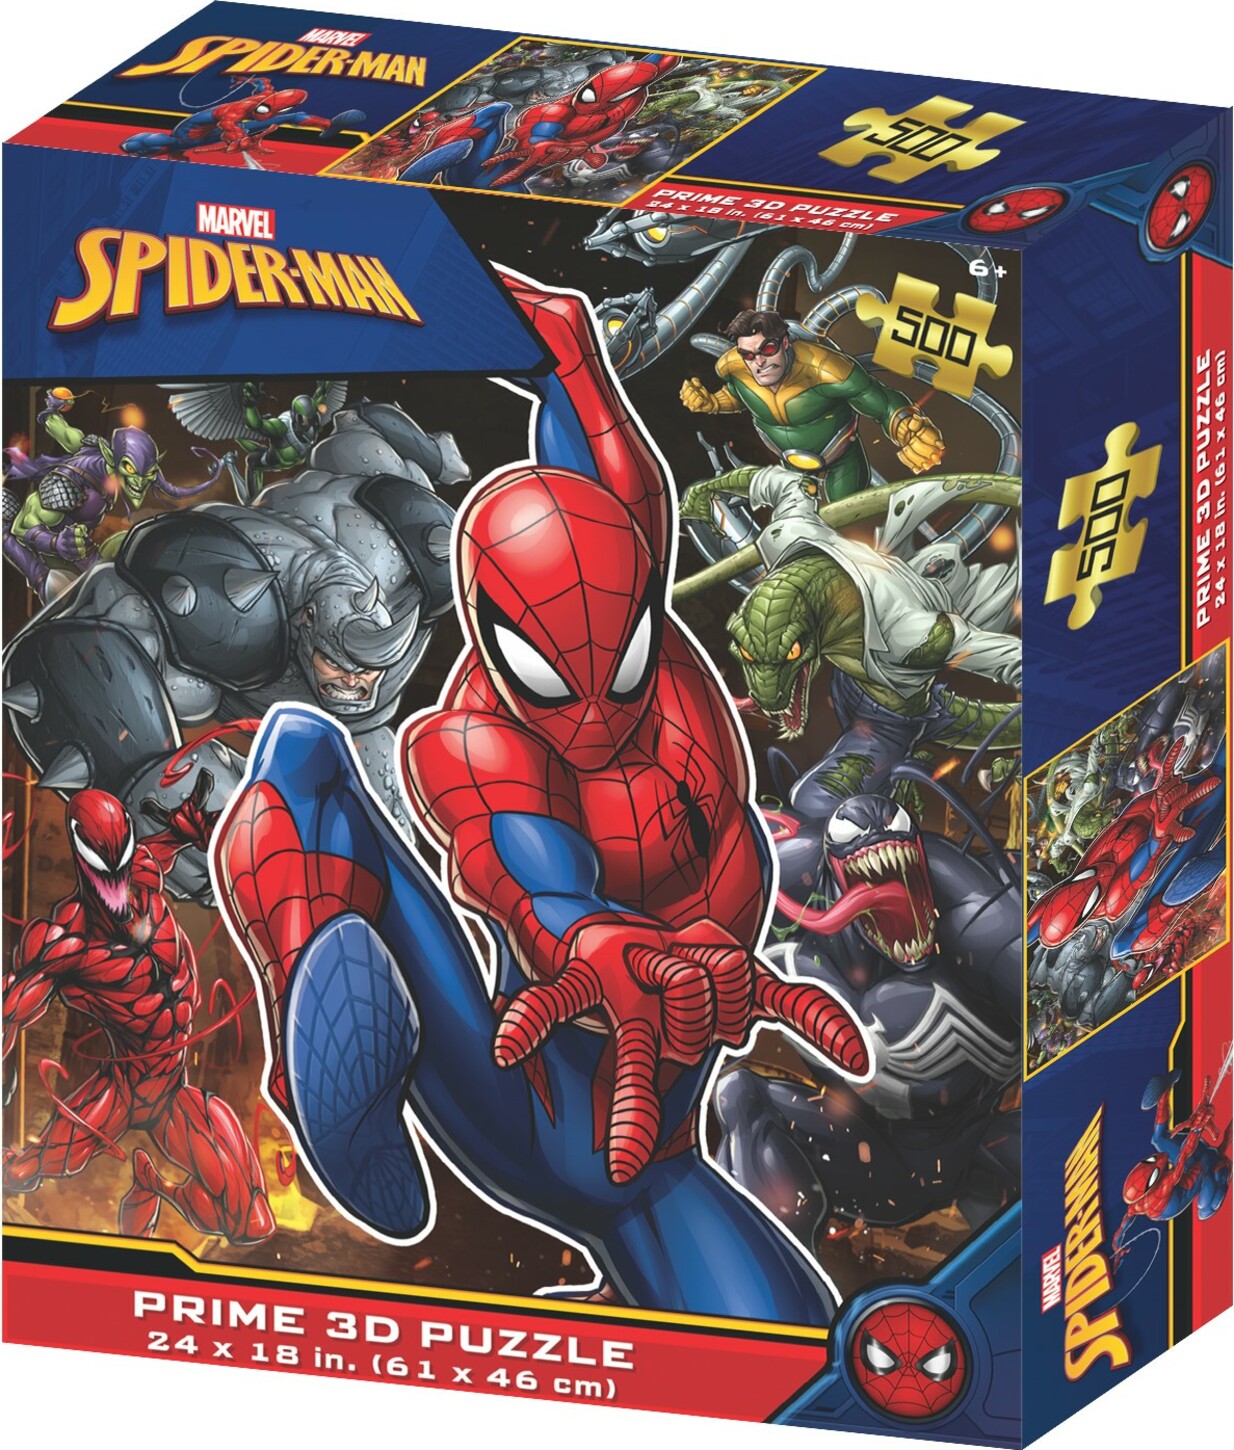 PUZZLE 3D PRIME - Spiderman 500 pz - 3D Puzzle